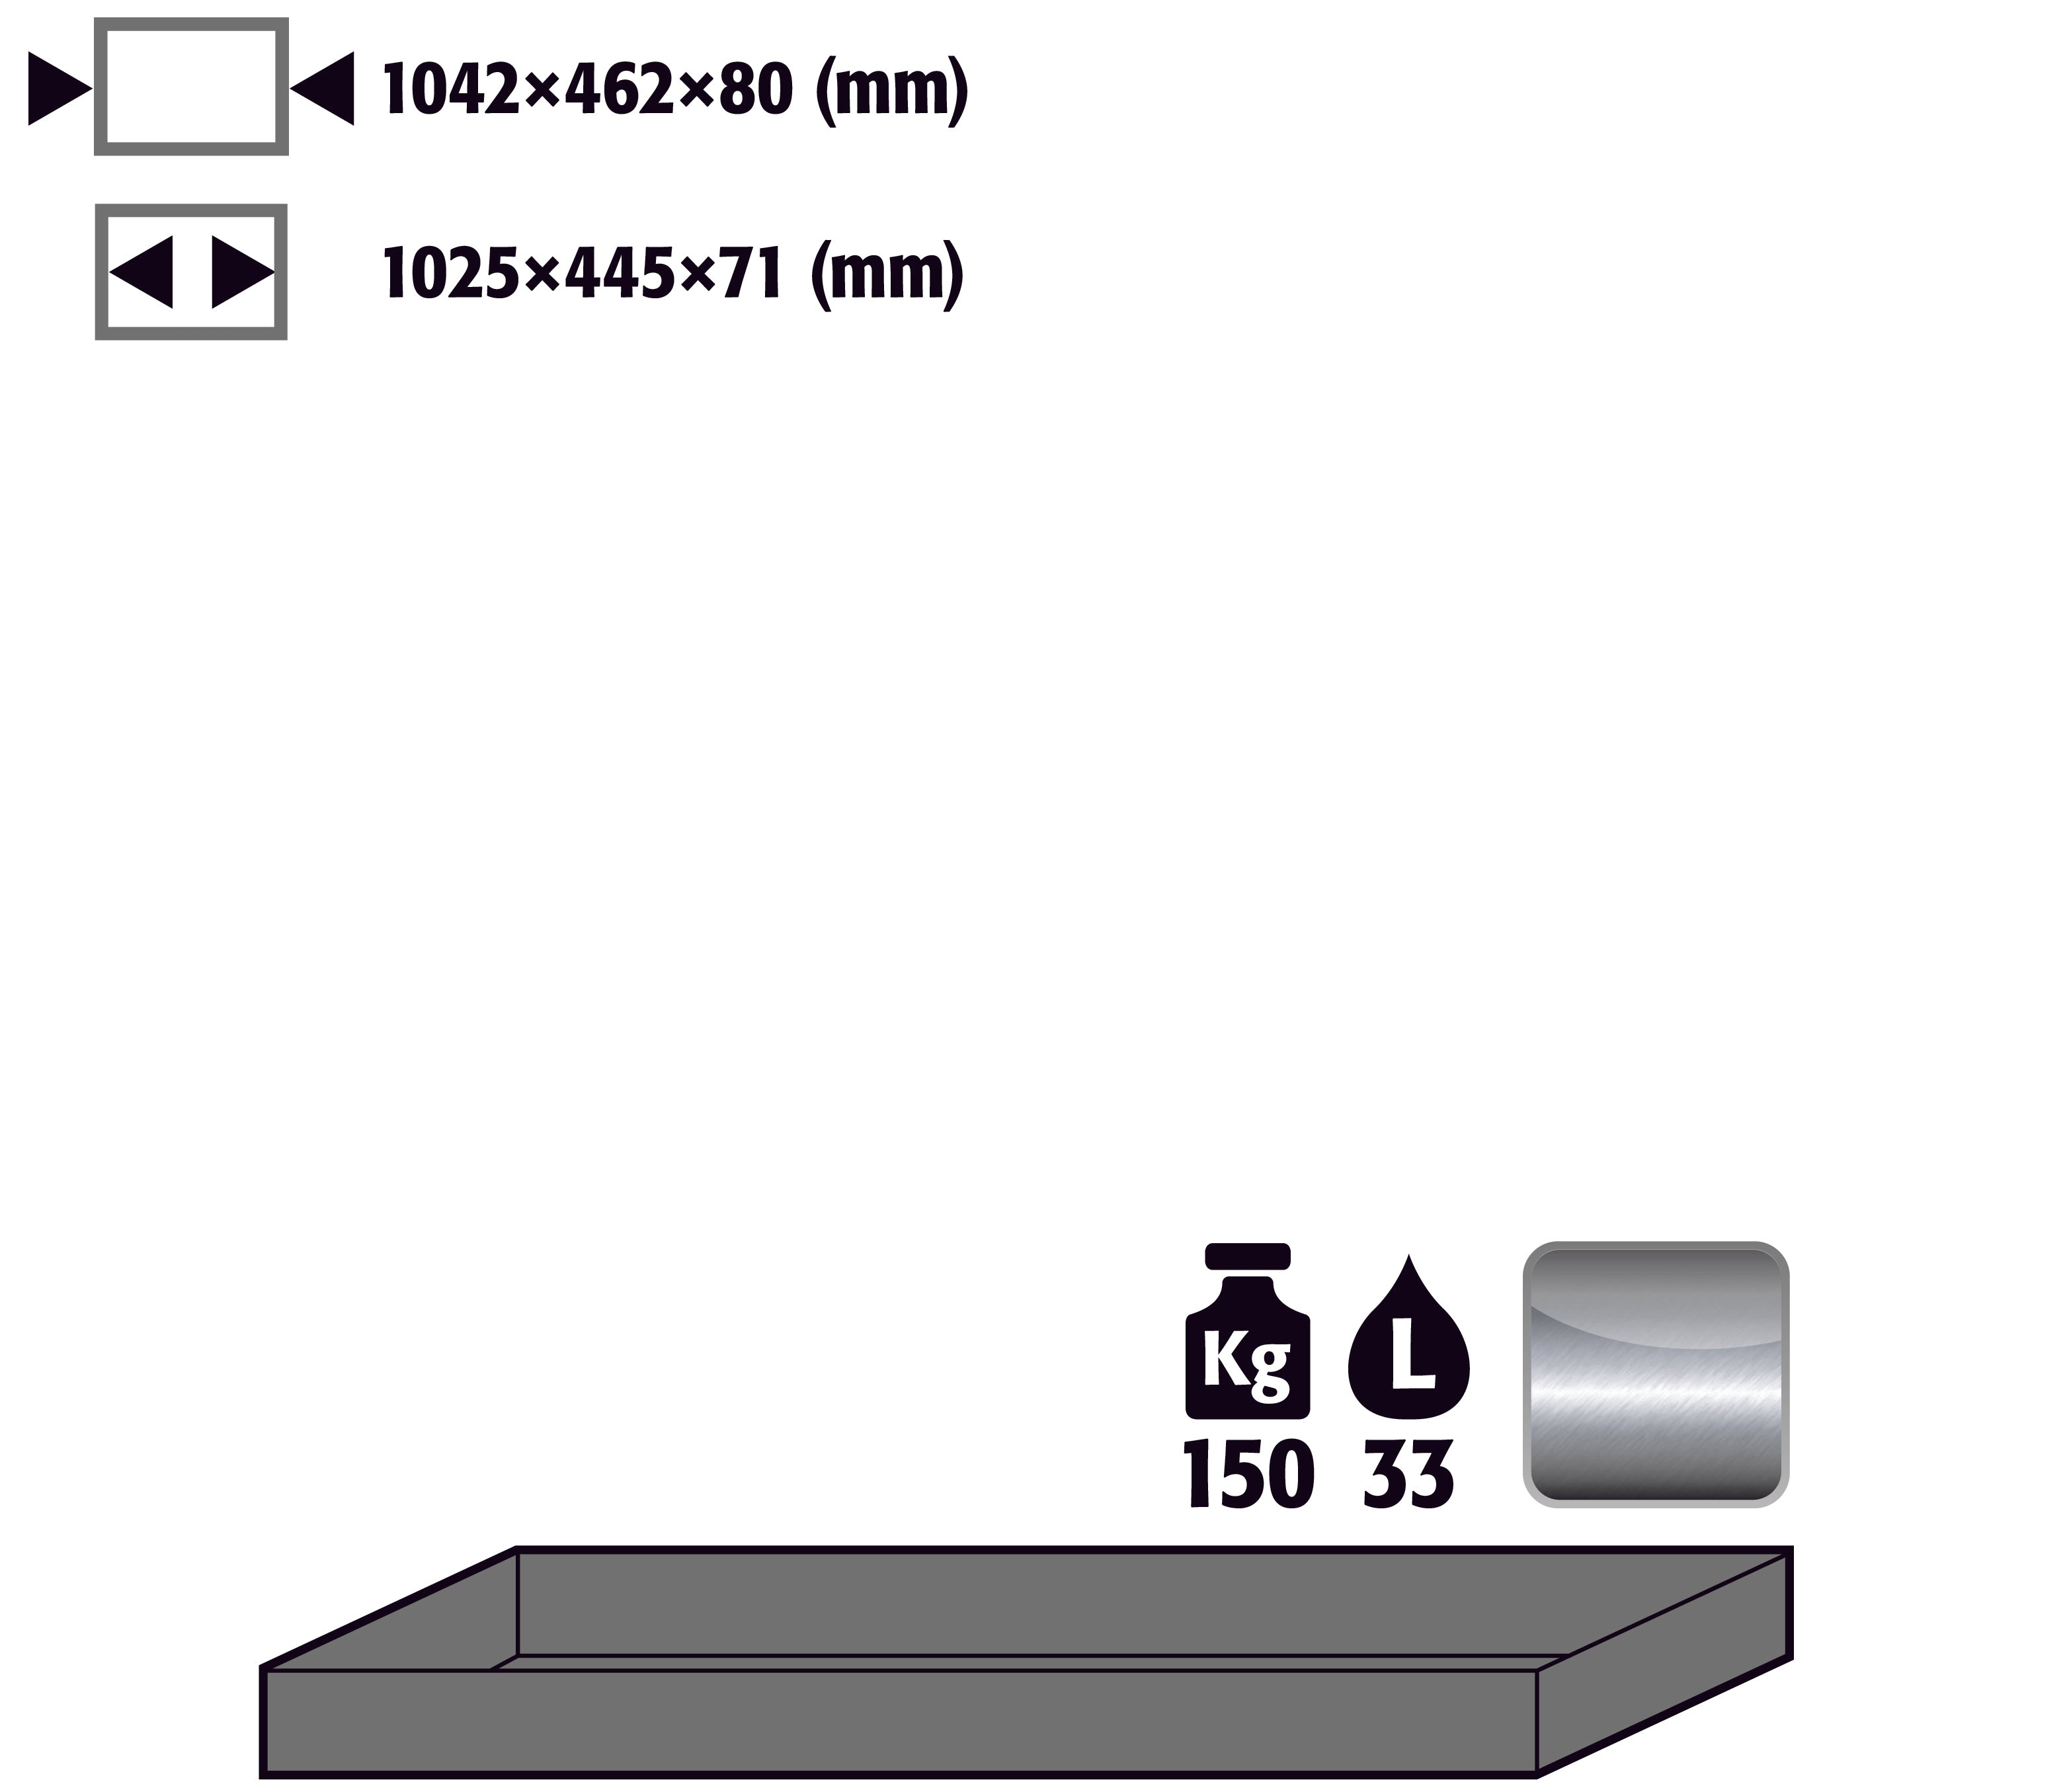 Bac au sol standard (volume: 33,00 litres) pour modèle(s): Q90, S90 avec largeur 1200 mm, acier inoxydable 1.4016 brut